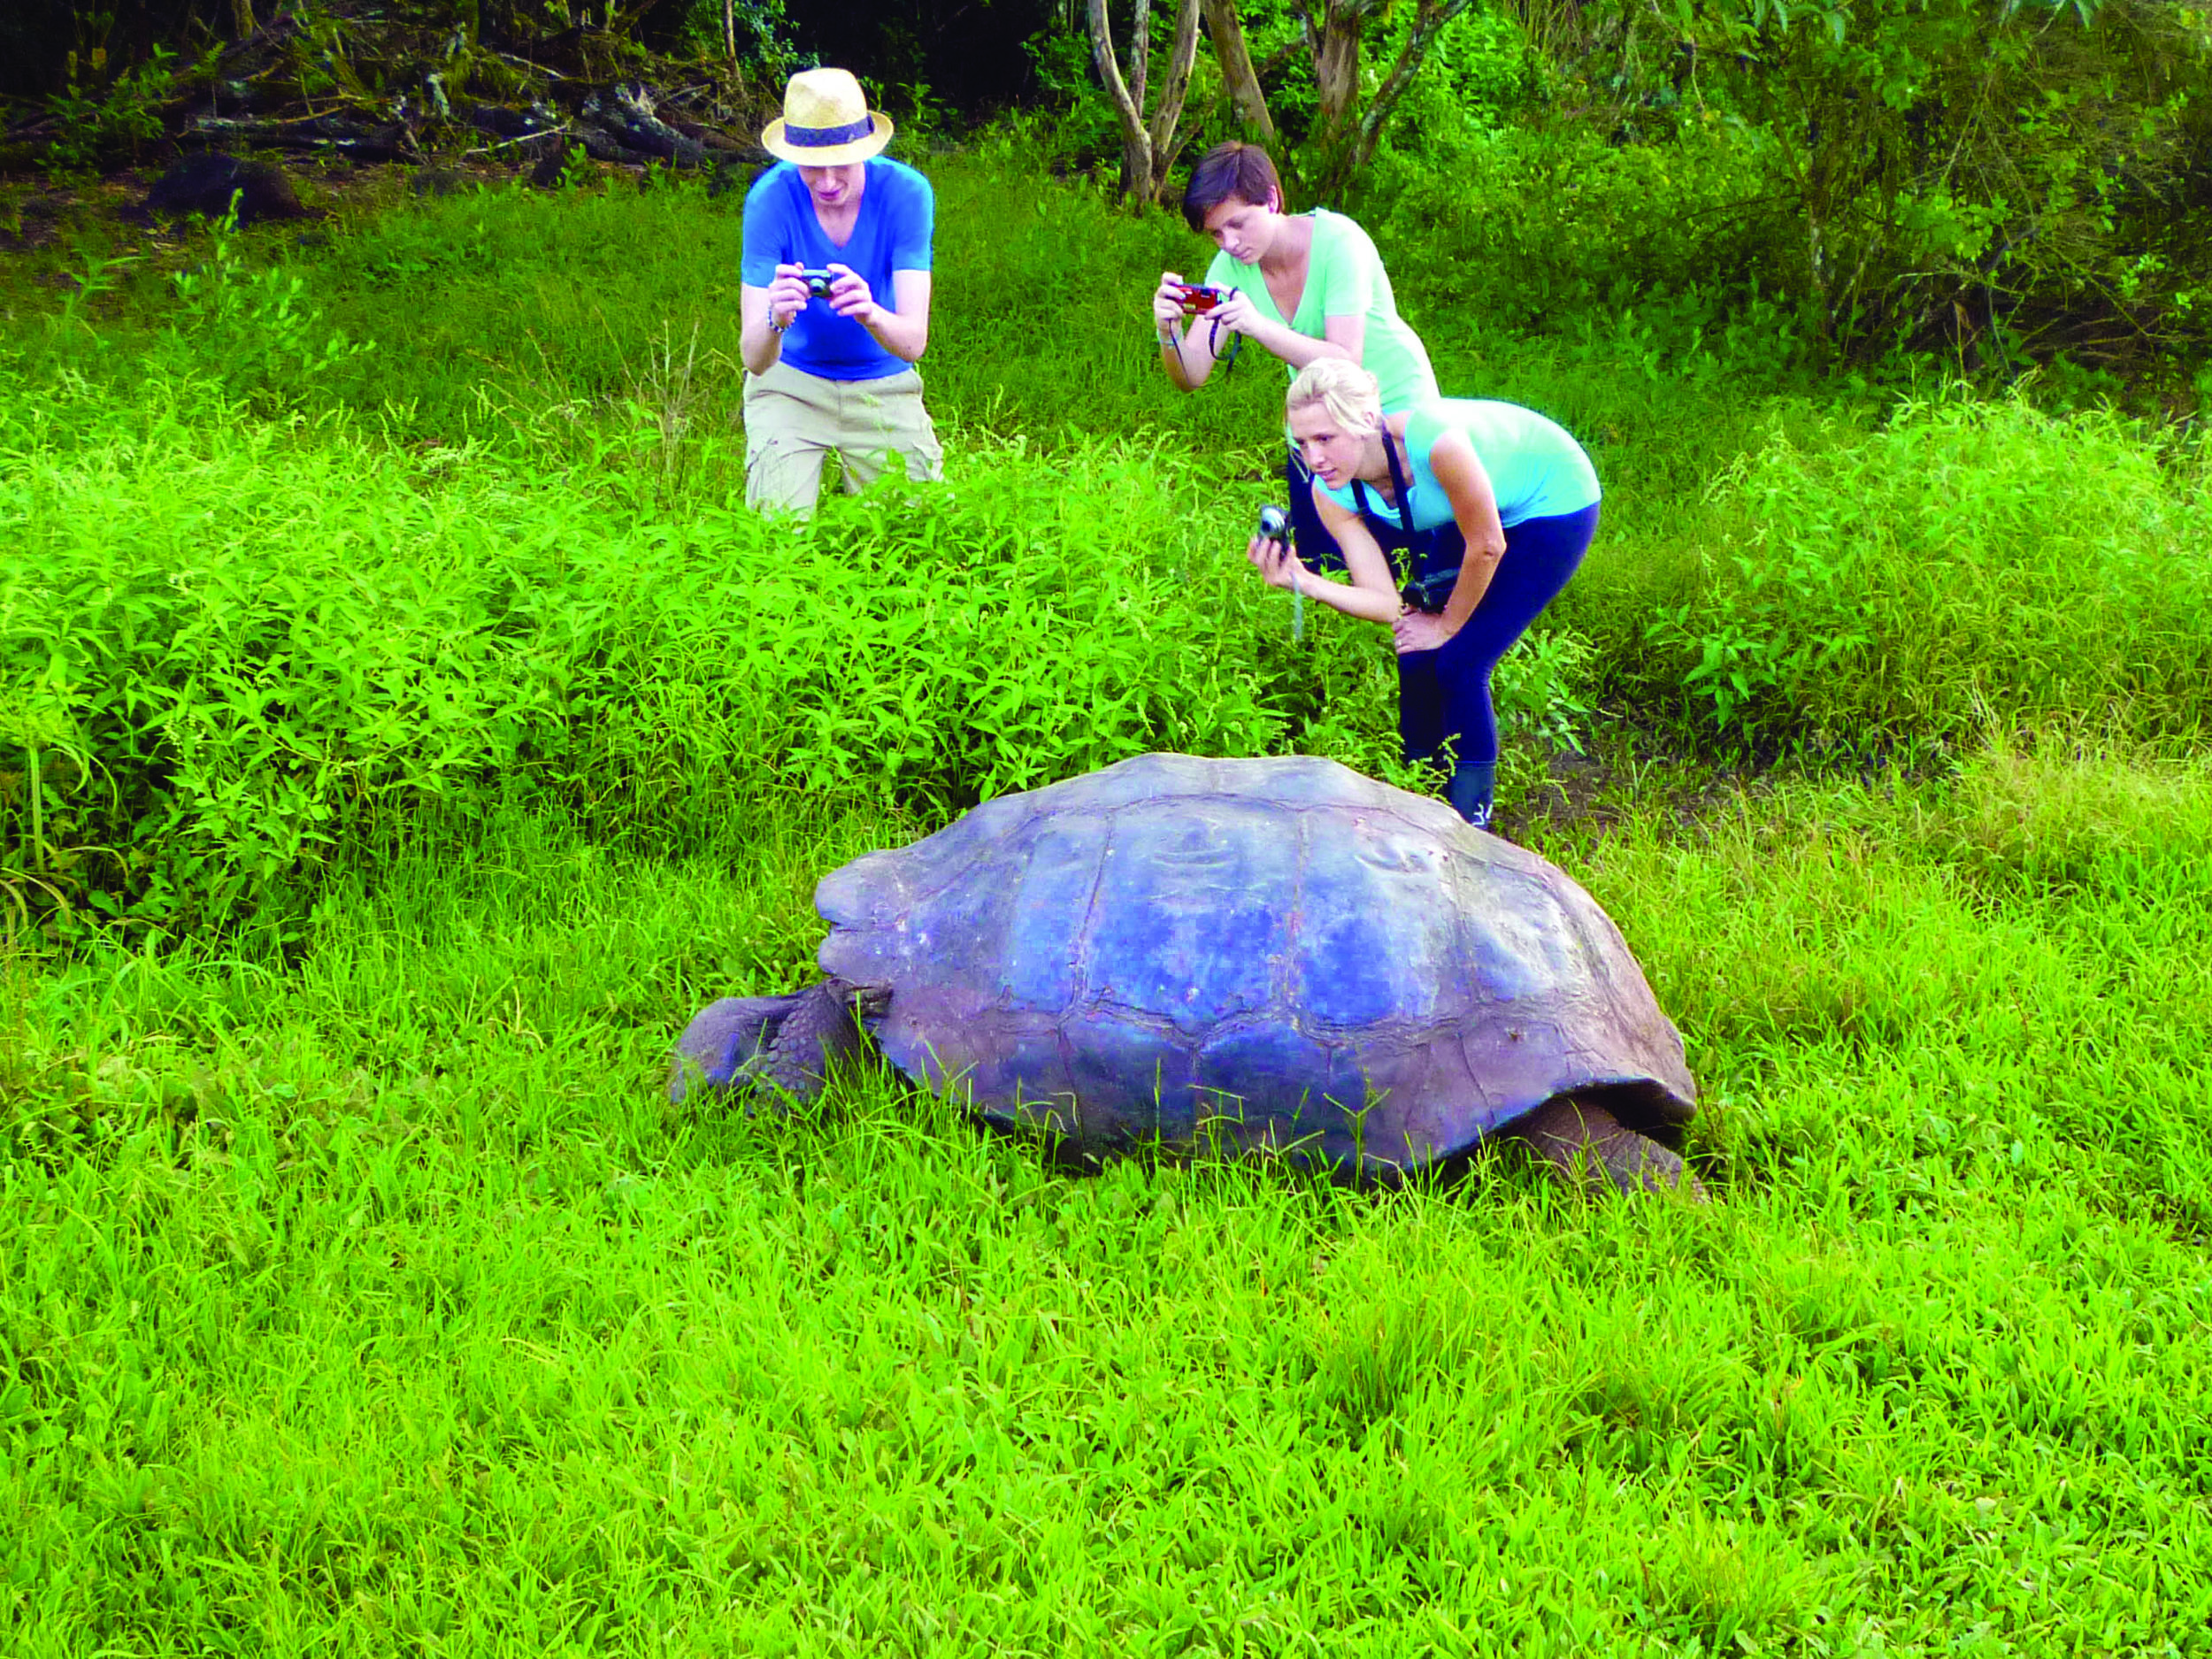 Tortoise with guests_Santa Cruz_WestonWalker.jpg